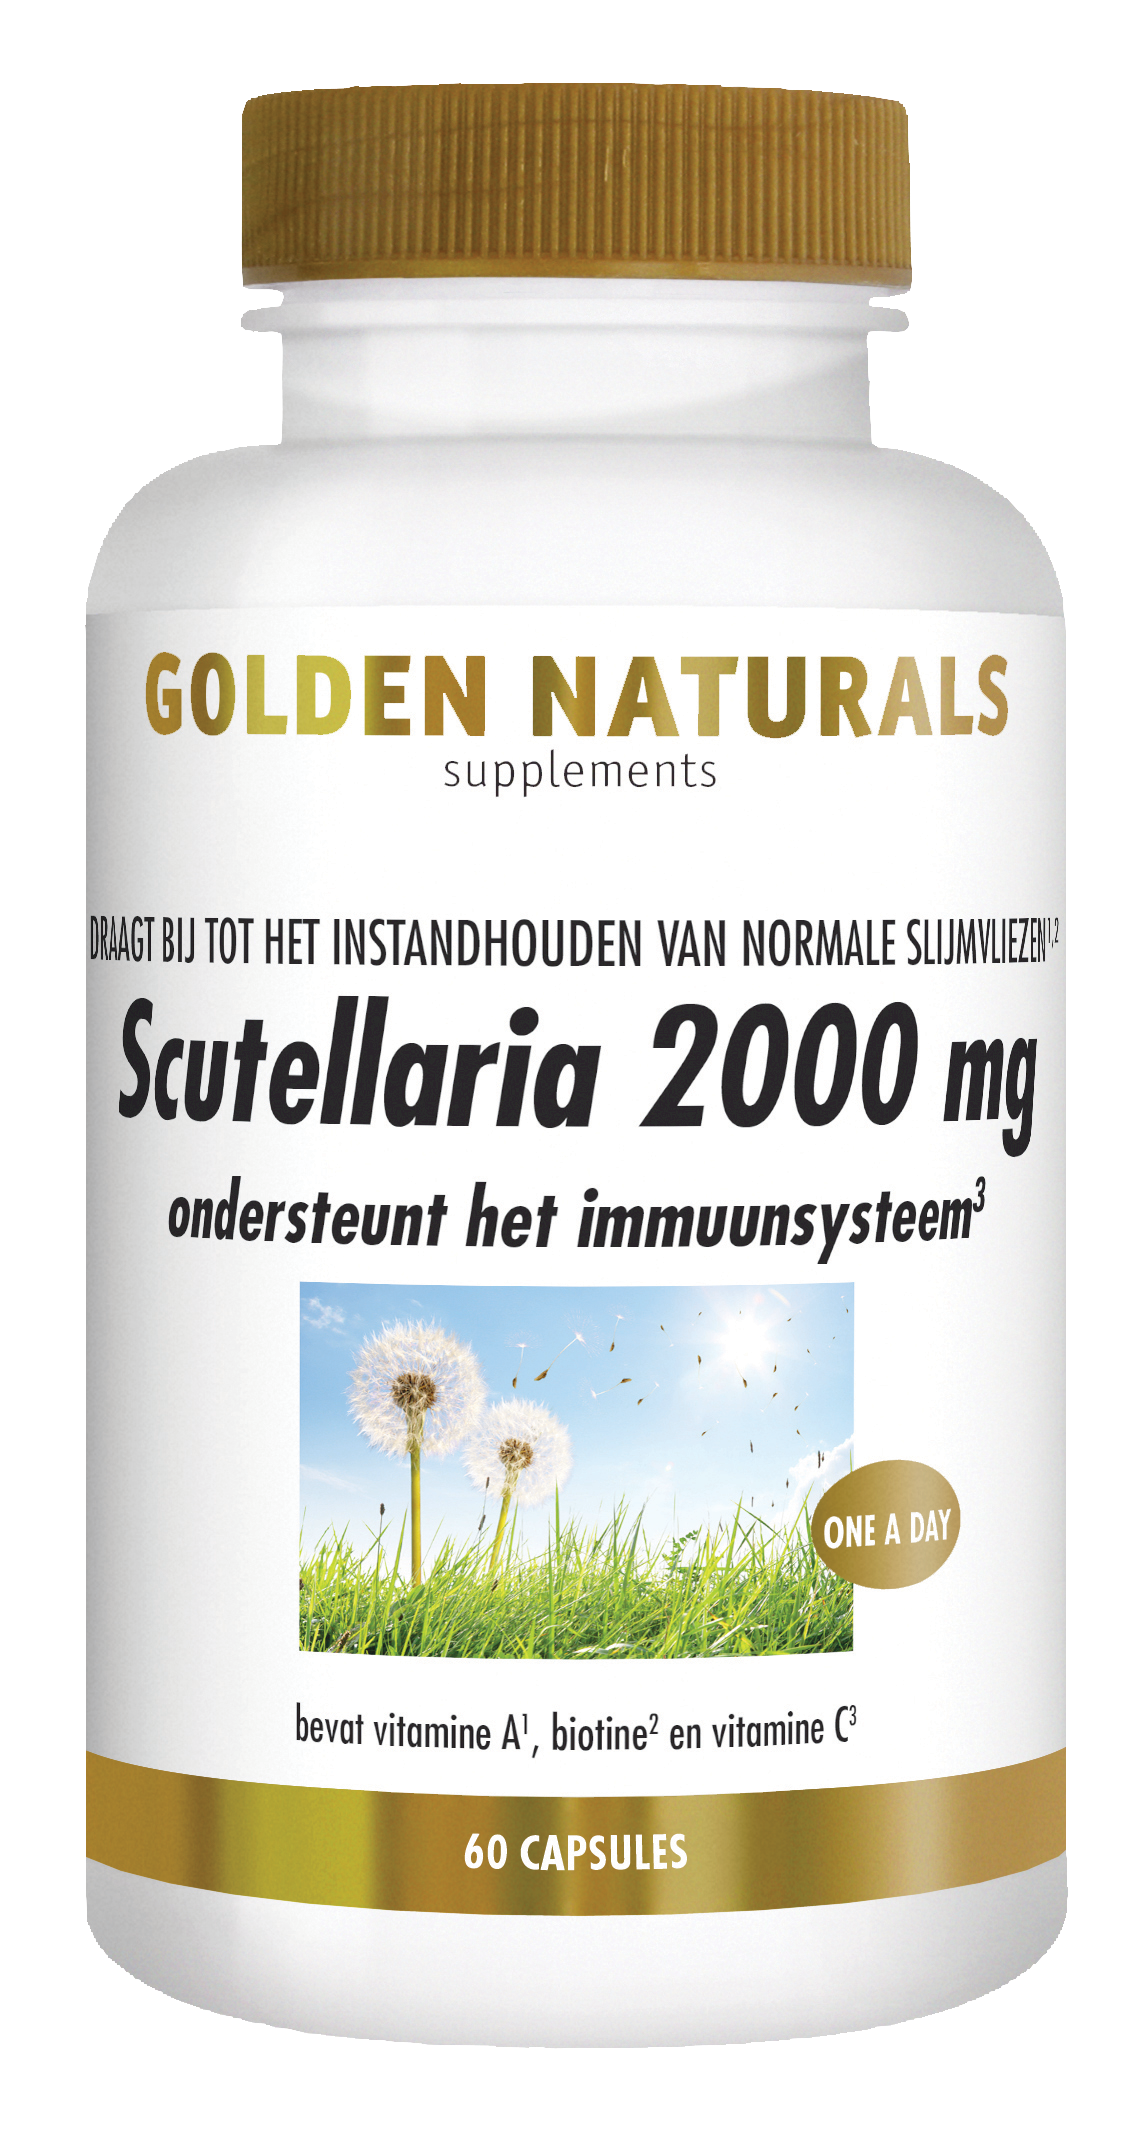 _Golden Naturals Scutellaria 2000 mg 60 caps GN-418png